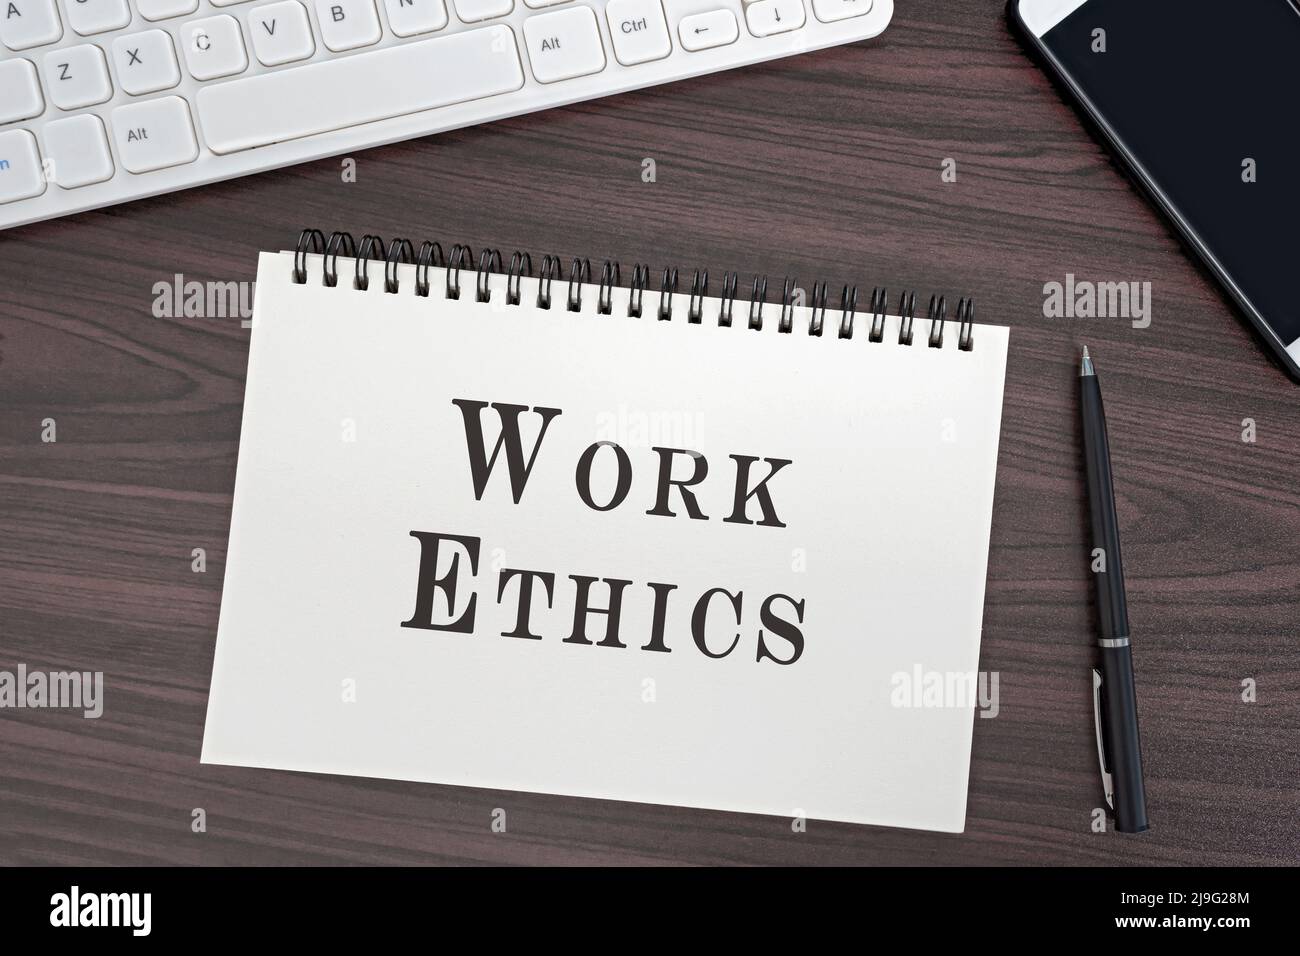 Vue de dessus et disposition plate du bureau et bloc-notes avec mot éthique de travail. Concept d'entreprise. Banque D'Images